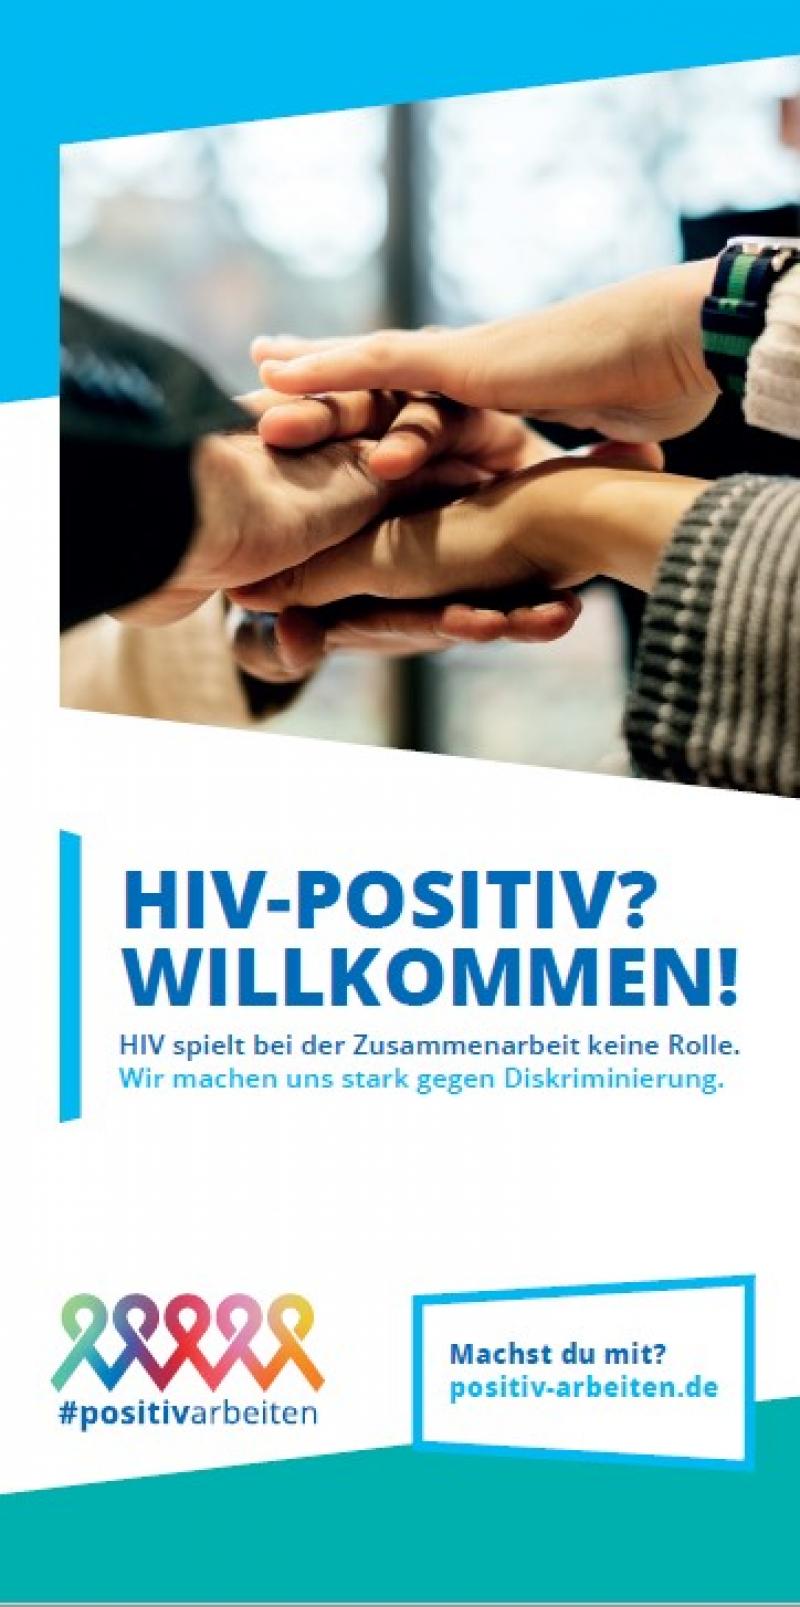 Mehrere Händer übereinander zu einer Gruppengeste gelegt. Titel "HIV-Positiv? Willkommen!"